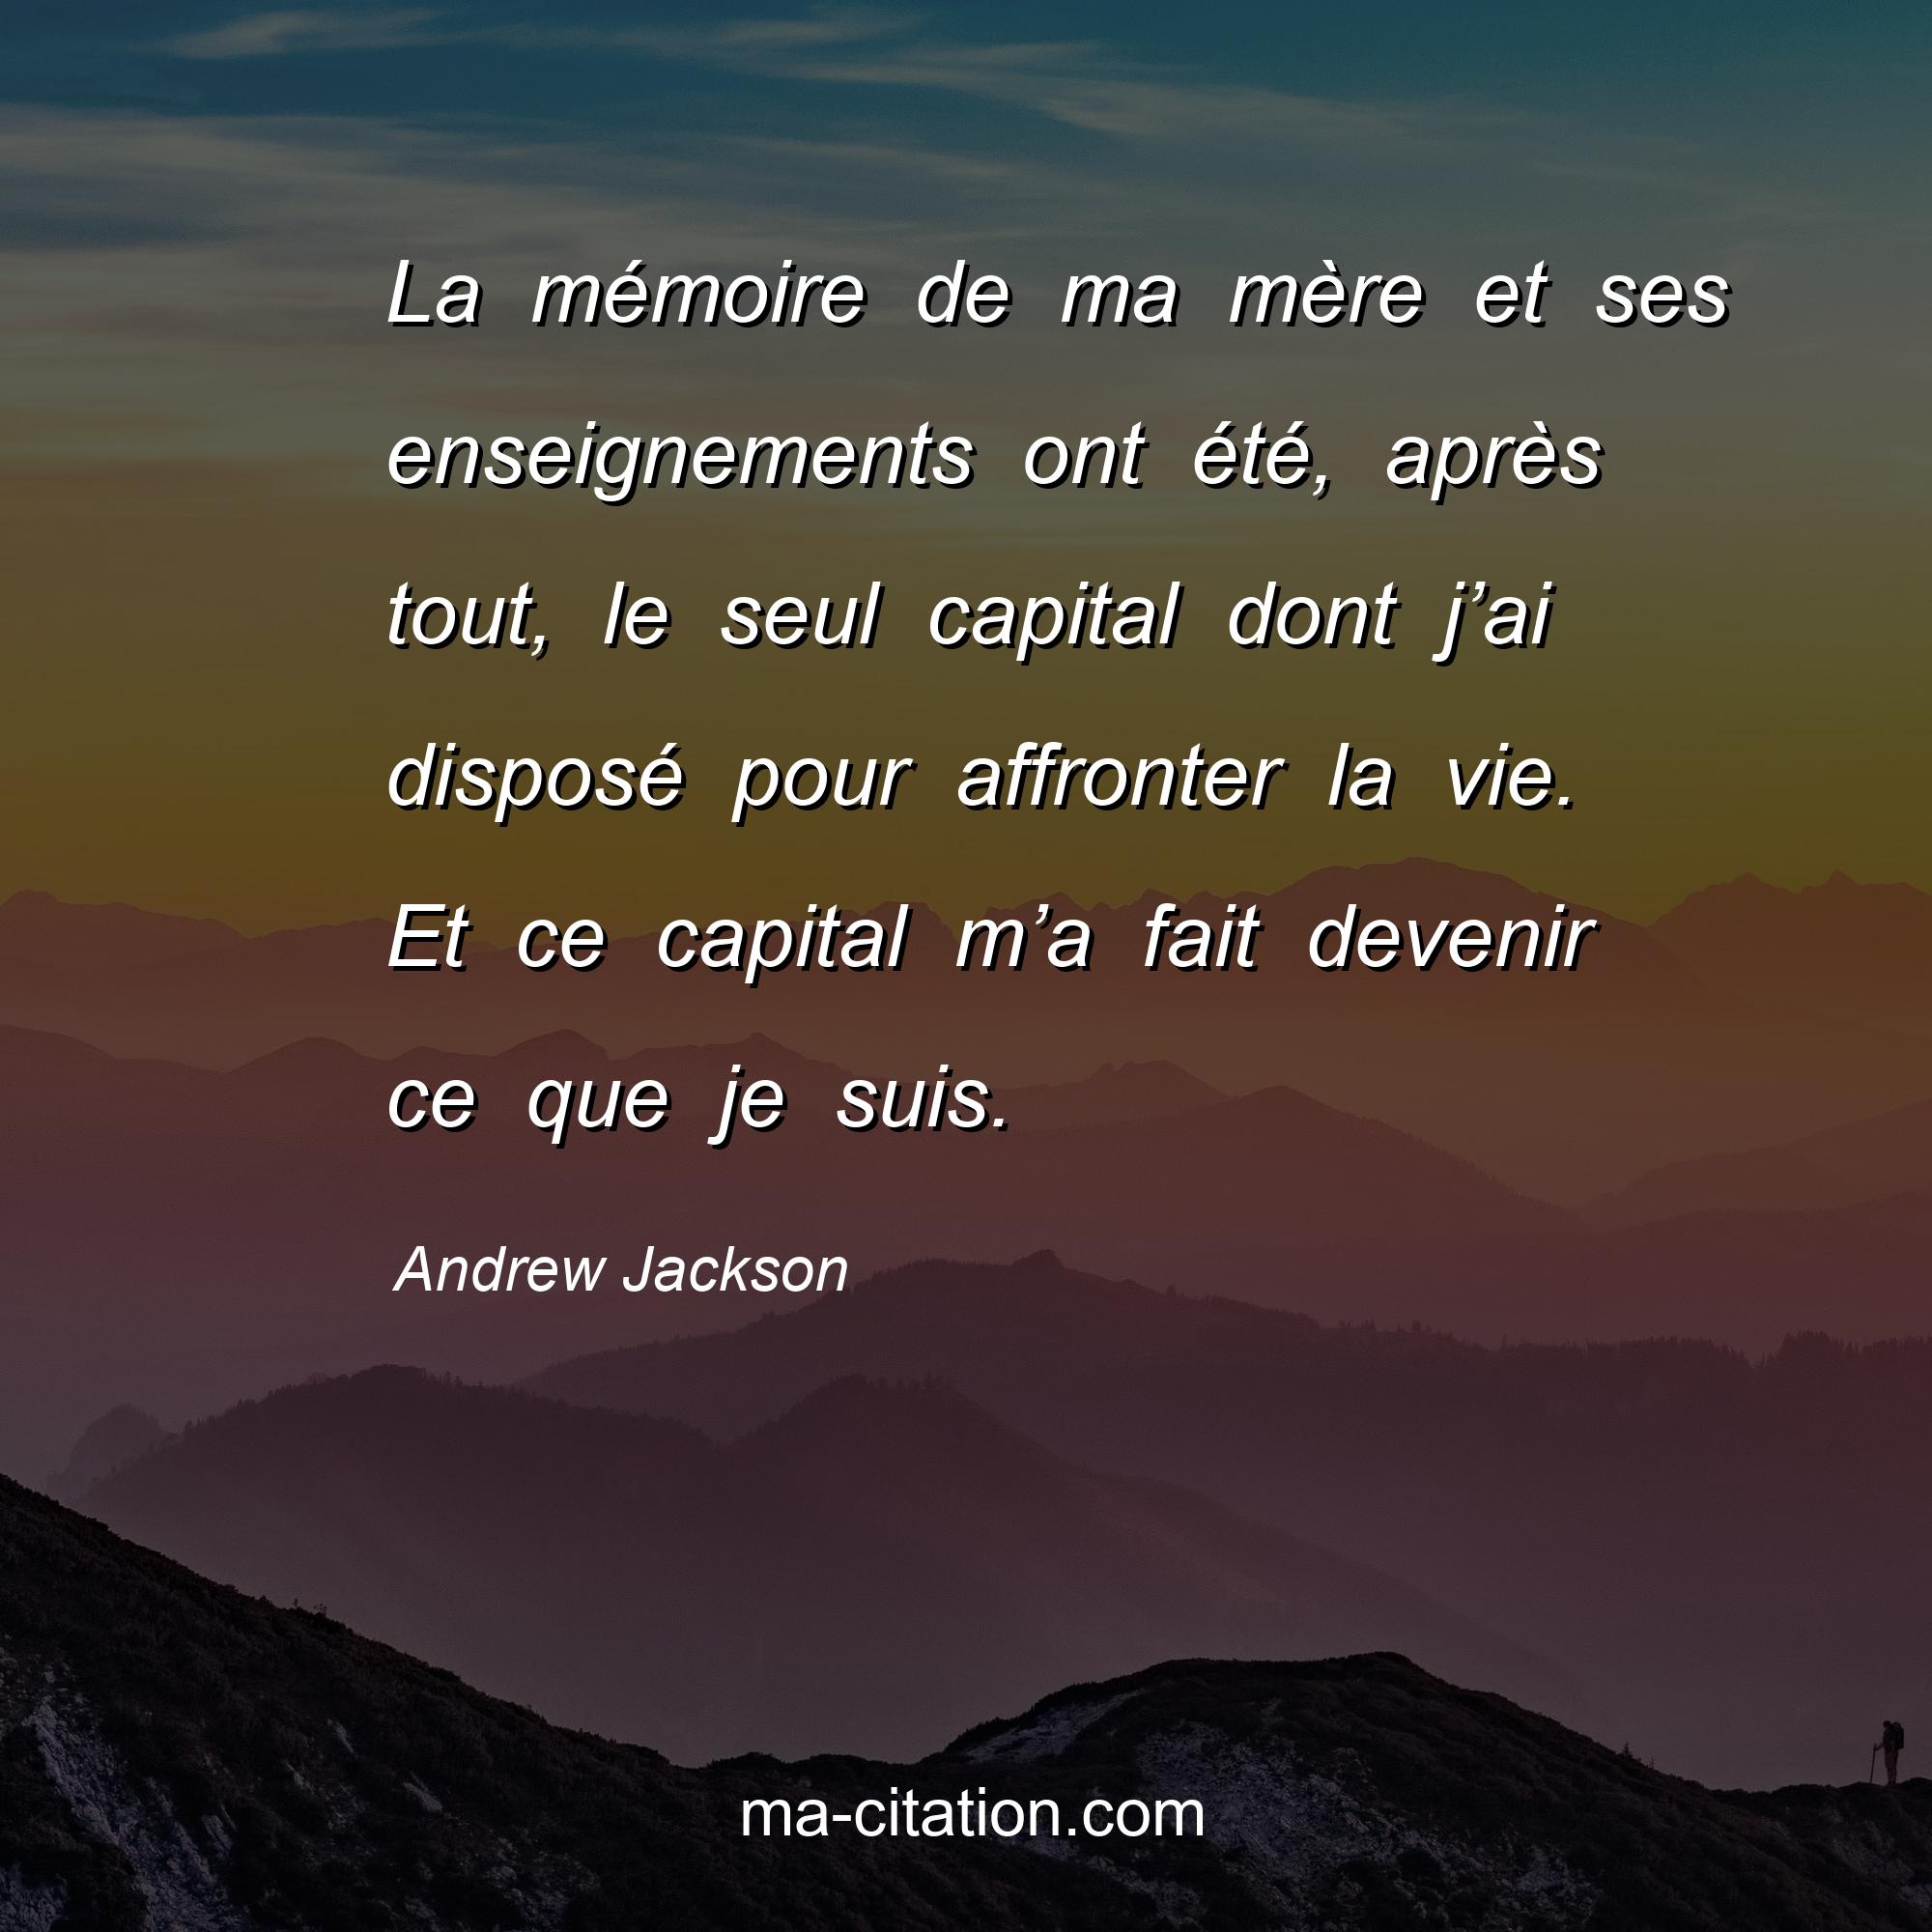 Andrew Jackson : La mémoire de ma mère et ses enseignements ont été, après tout, le seul capital dont j’ai disposé pour affronter la vie. Et ce capital m’a fait devenir ce que je suis.